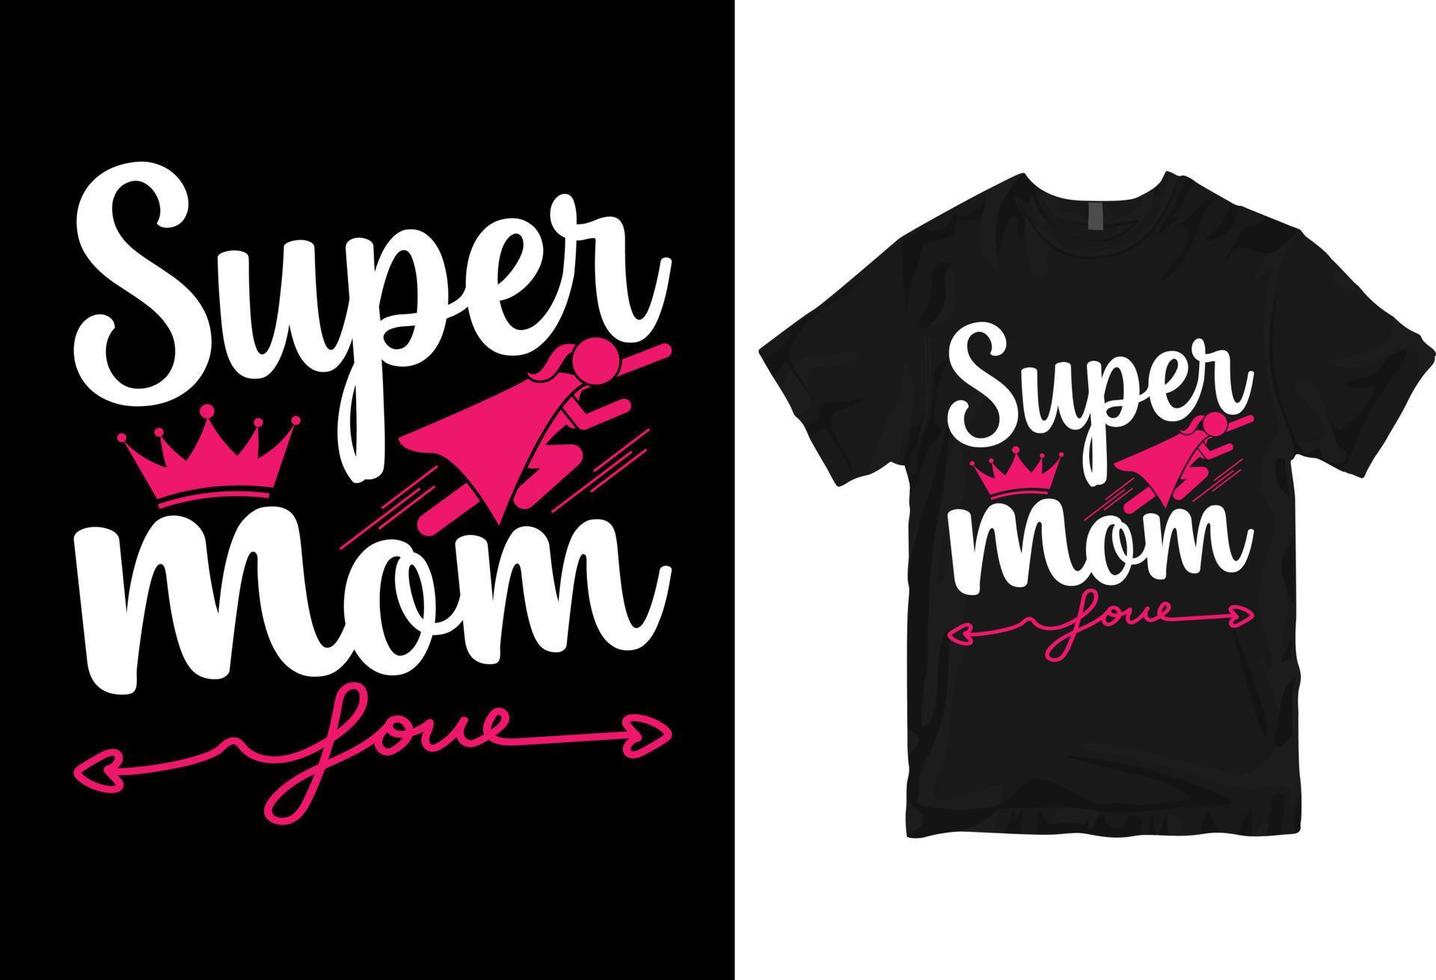 super maman, bonne fête des mères - mère cite la conception de t-shirt typographique vecteur